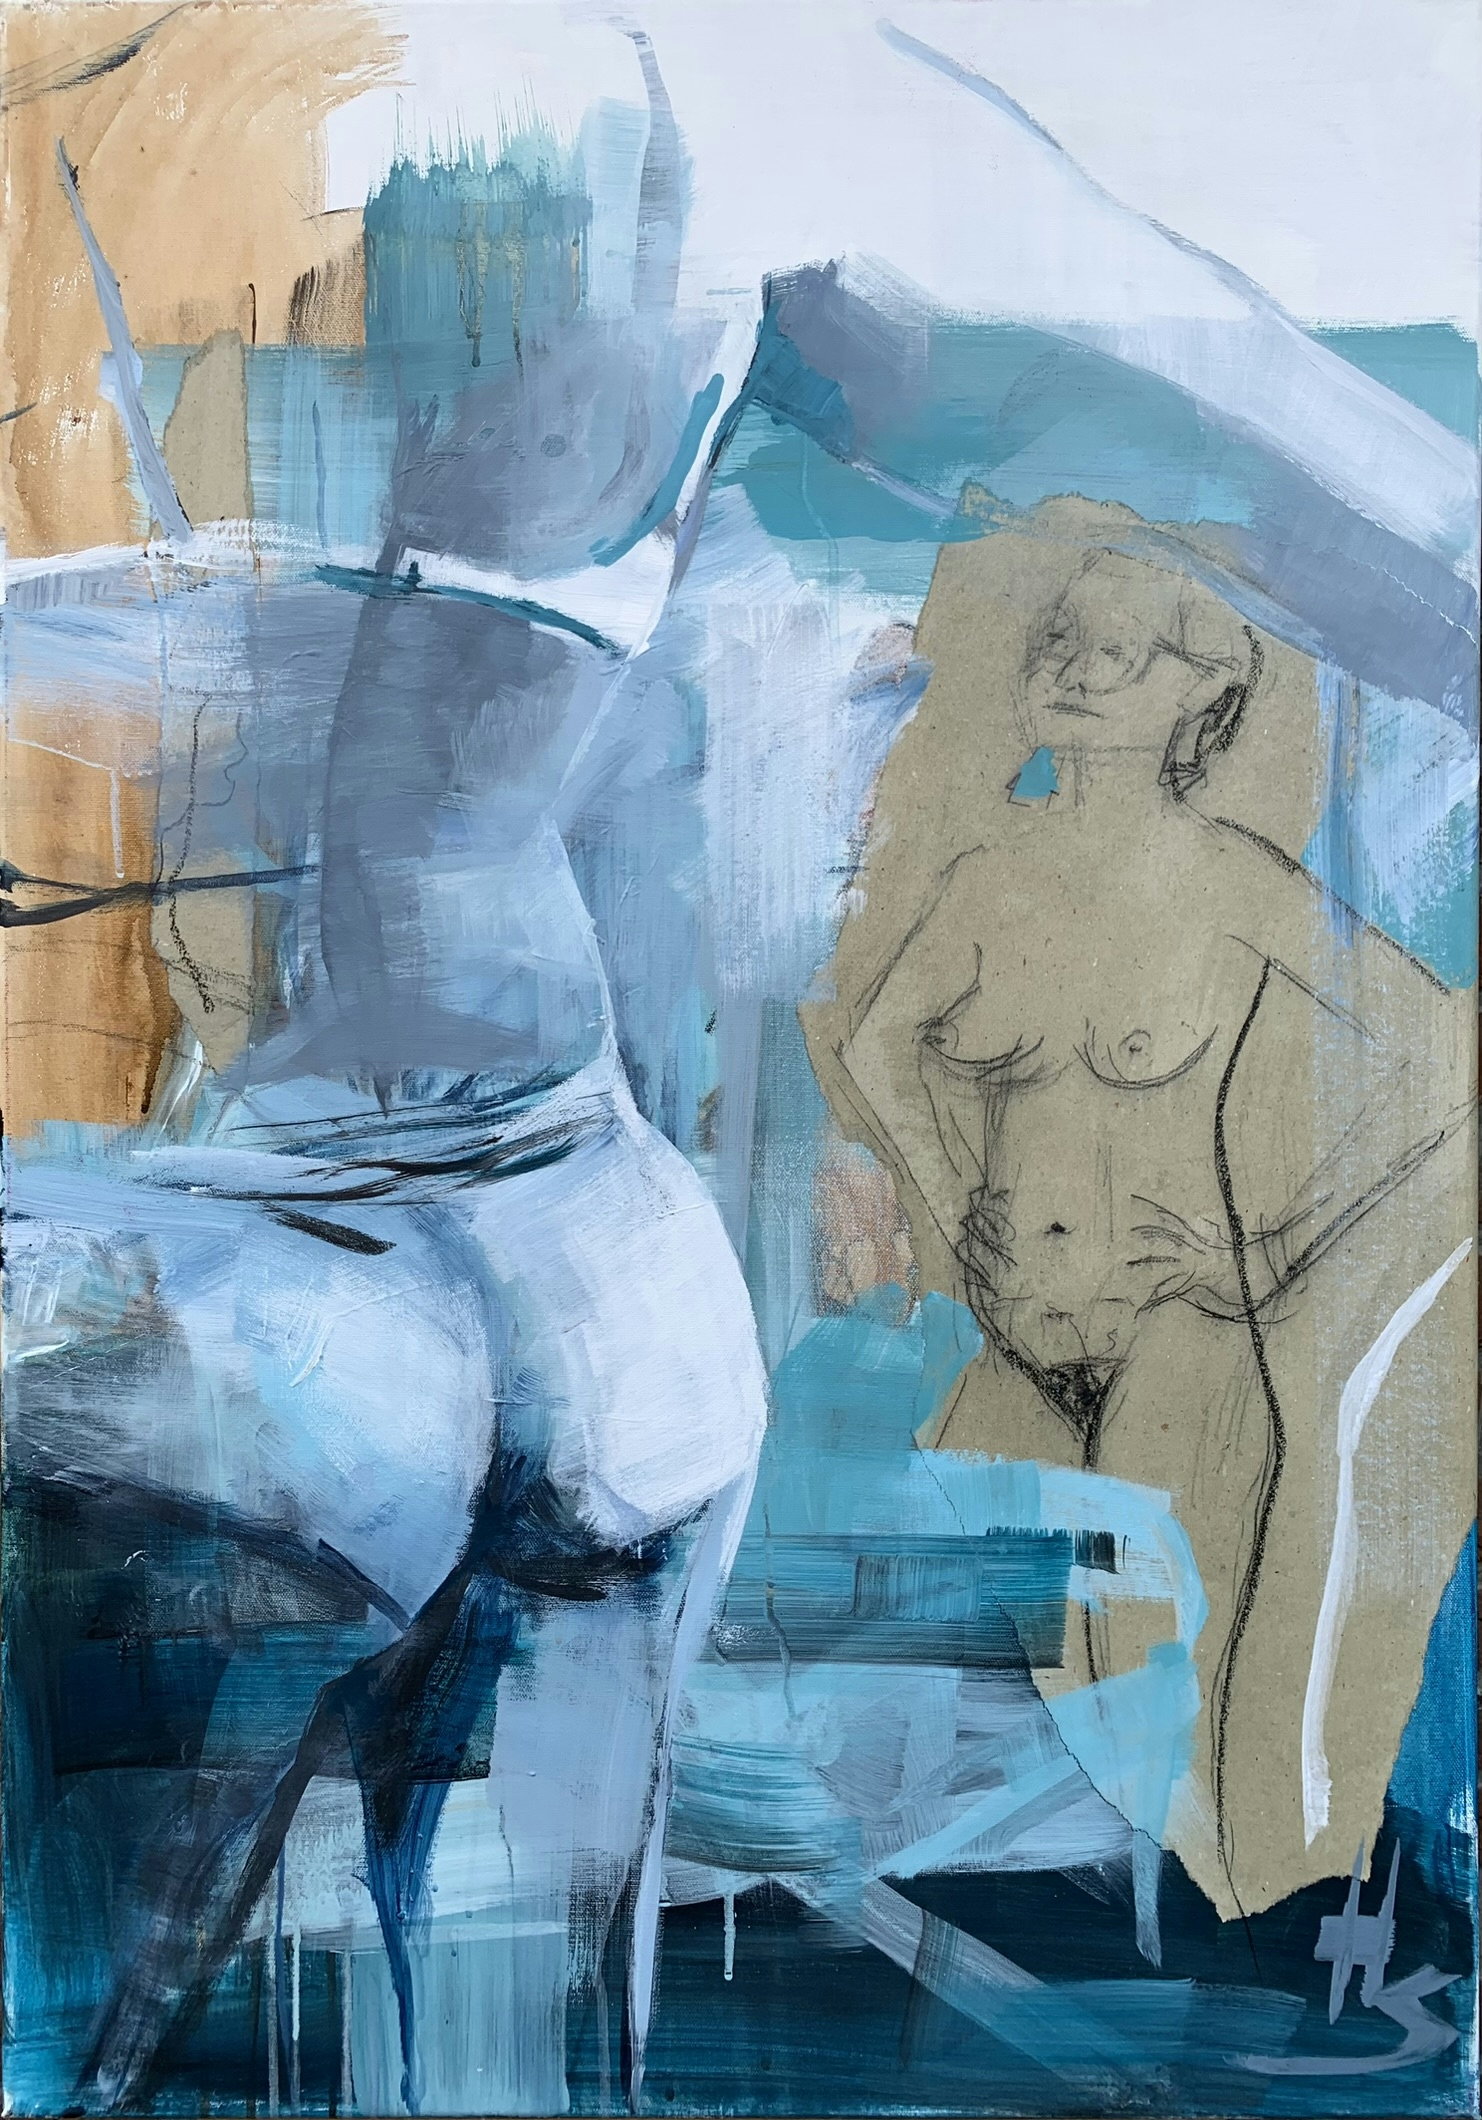 Nude artwork by Heike Schümann depicts two standing women